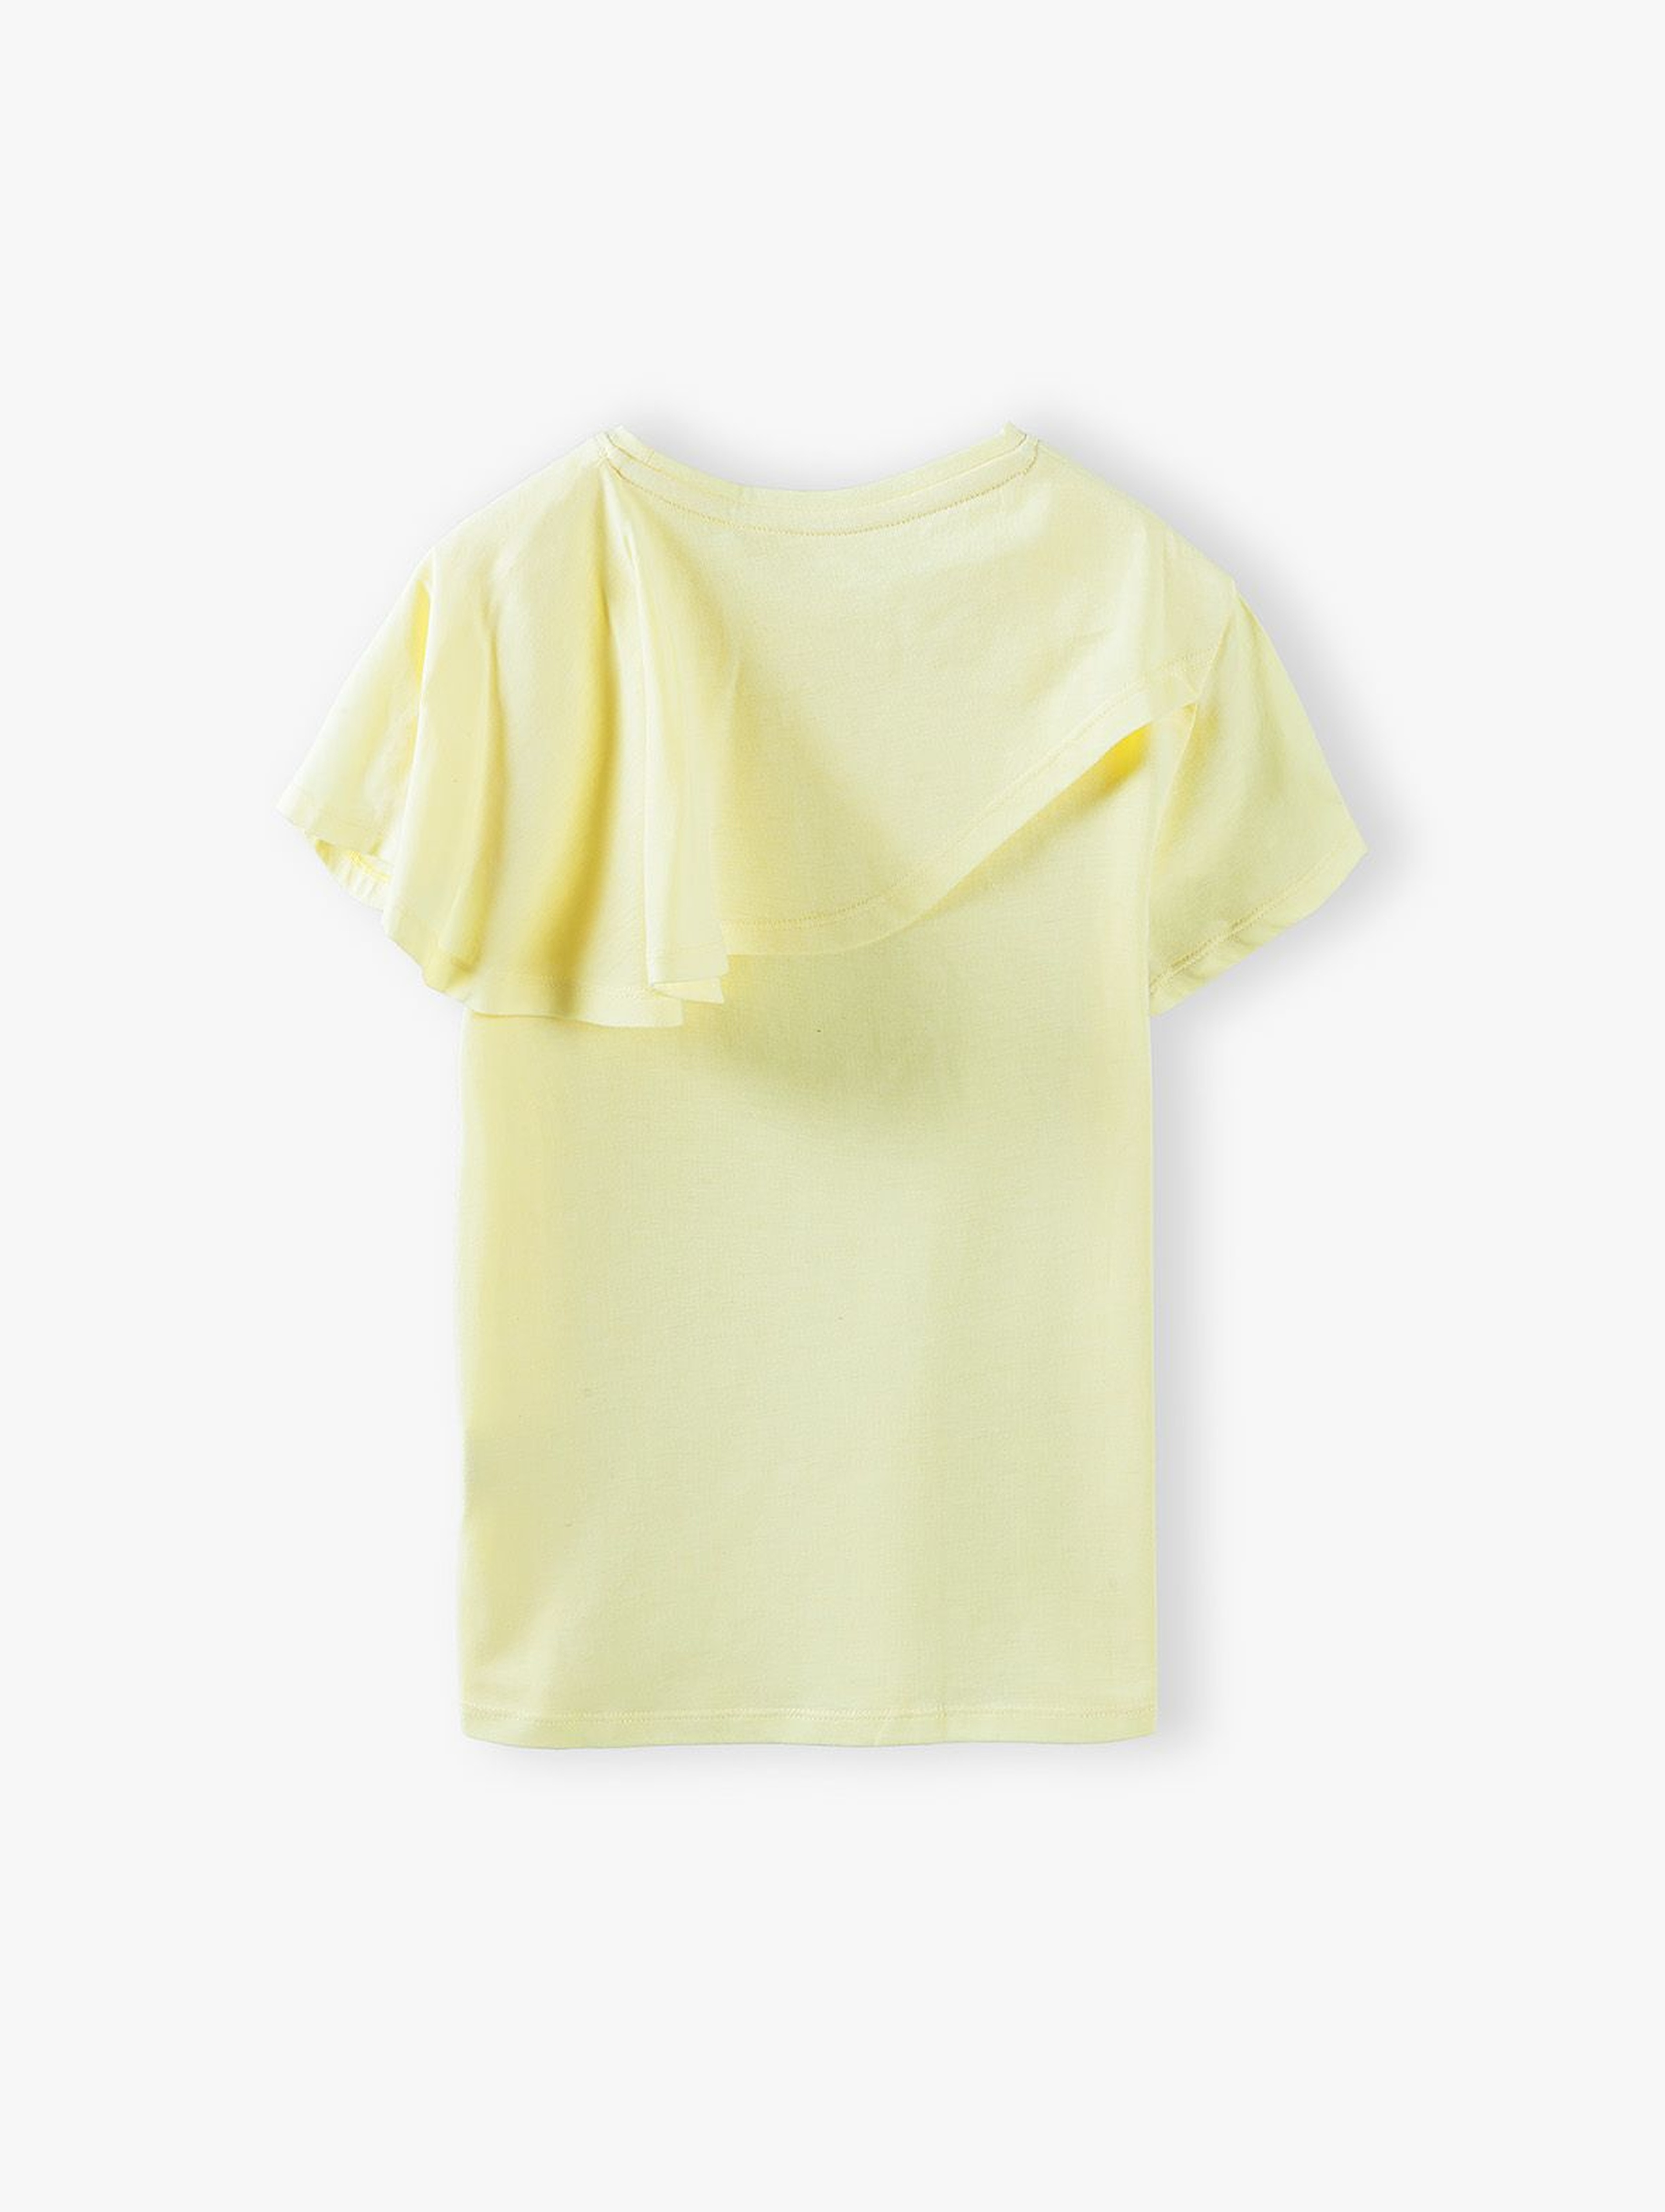 T- shirt dziewczęcy z falbanką - żółty